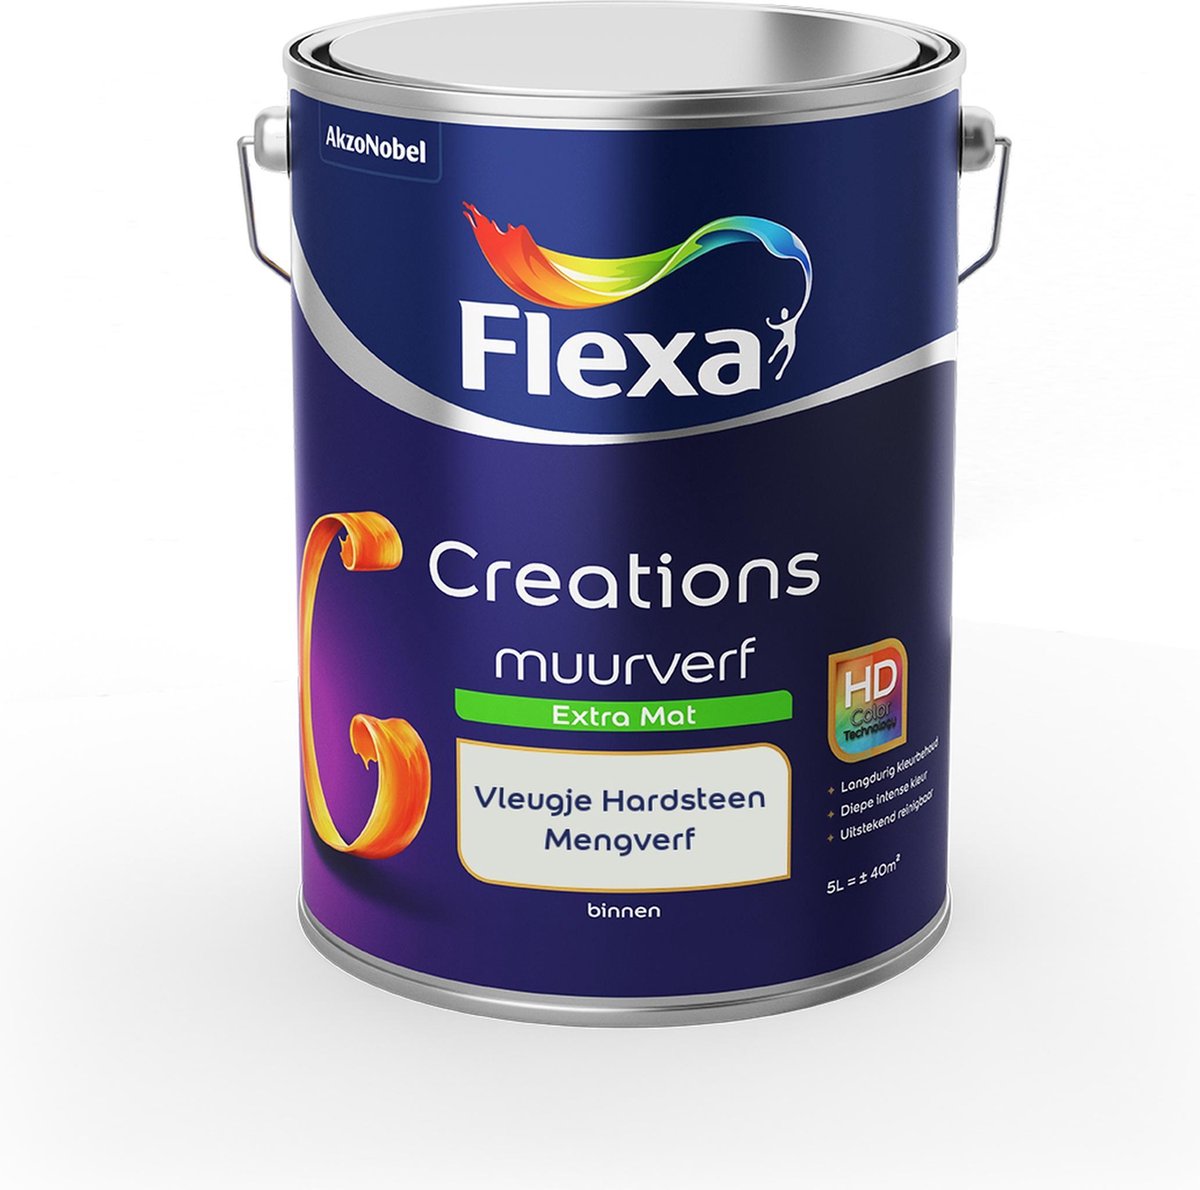 Flexa Creations Muurverf - Extra Mat - Mengkleuren Collectie - Vleugje Hardsteen - 5 liter